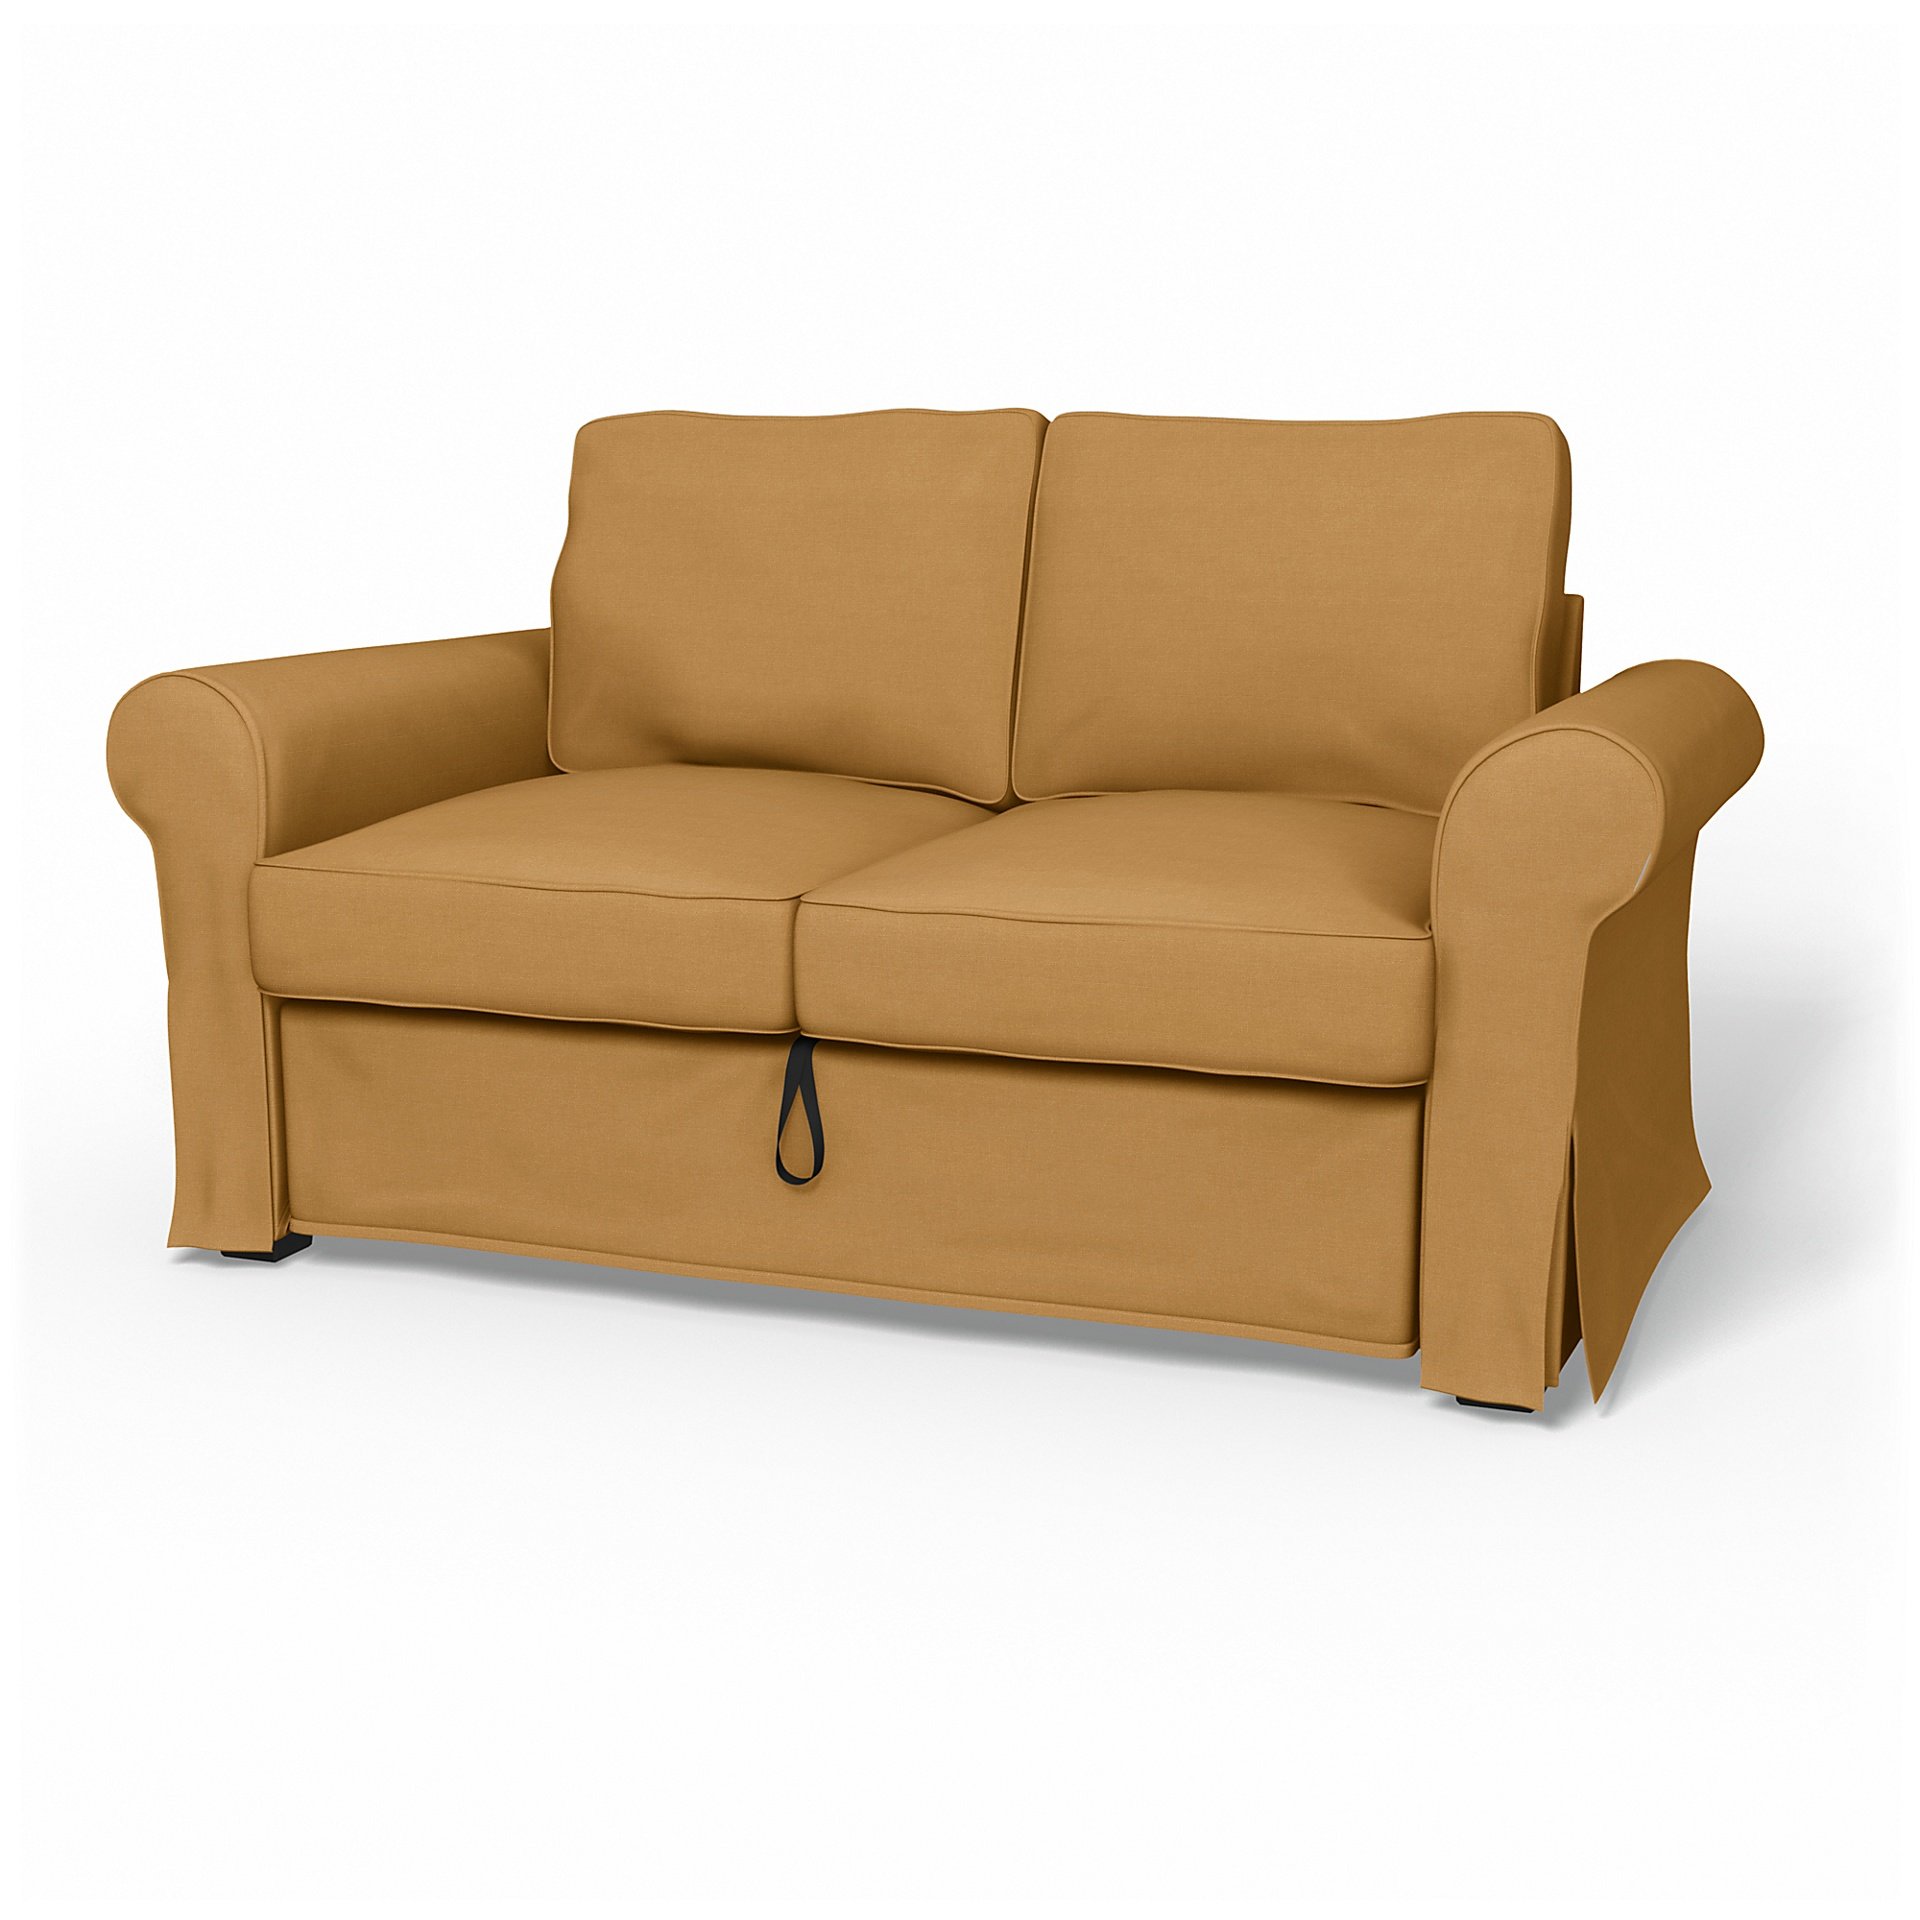 IKEA - Backabro 2 Seater Sofa Bed Cover, Mustard, Linen - Bemz